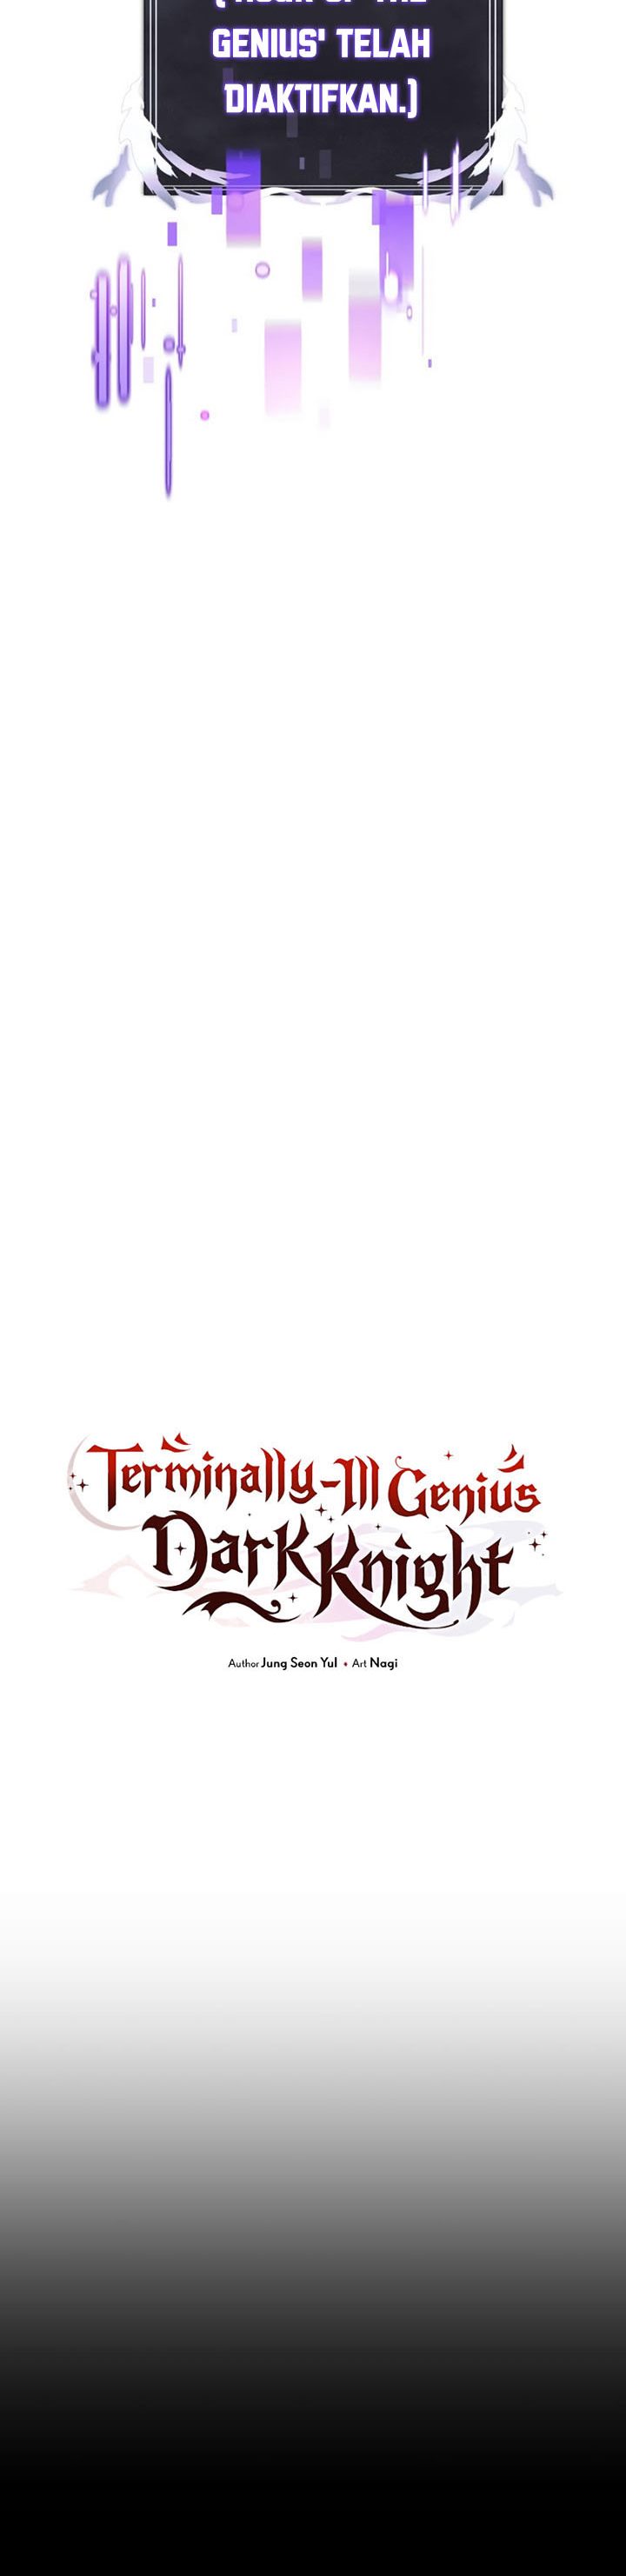 Terminally-Ill Genius Dark Knight  Chapter 18 Gambar 20